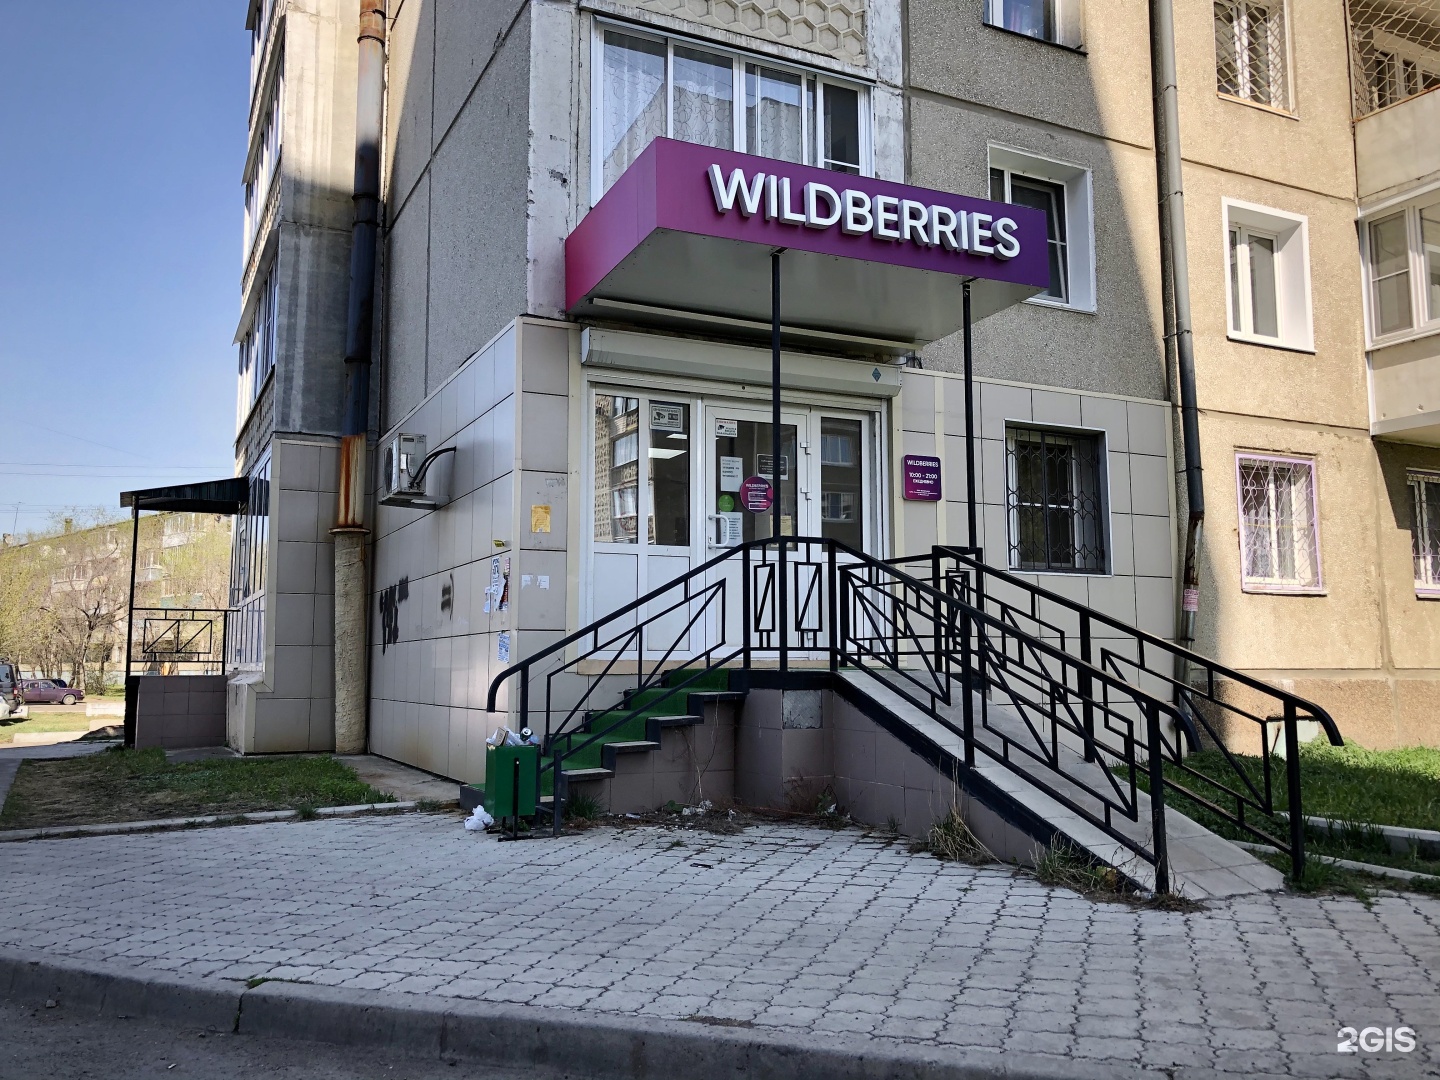 Wildberries Интернет Магазин Ангарск